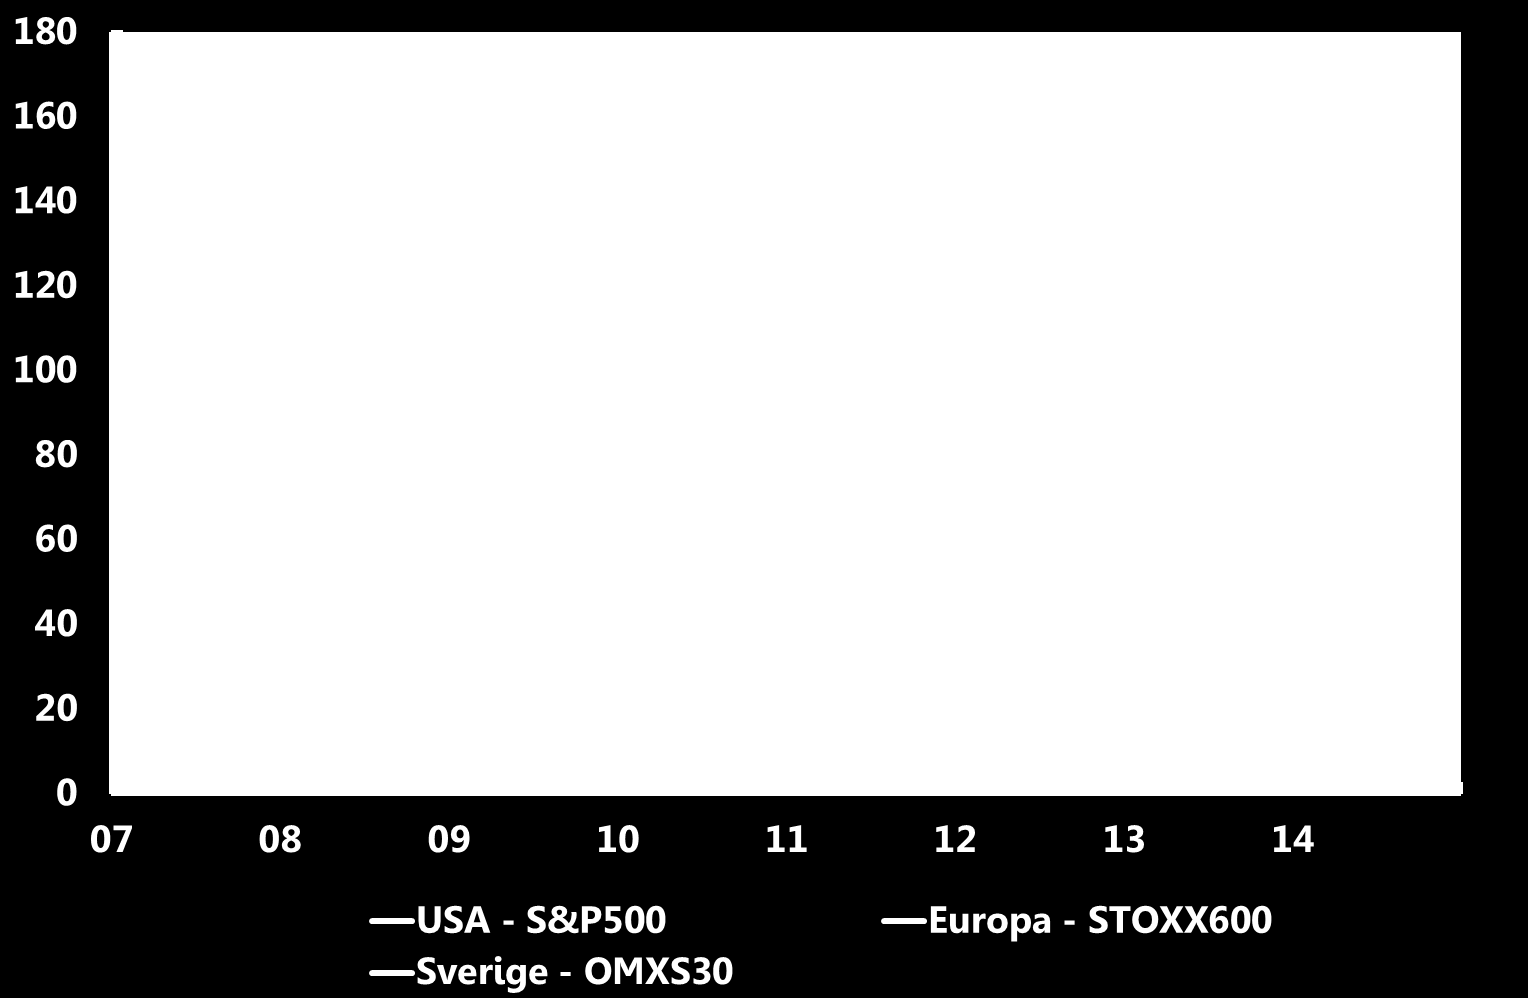 Aktiemarknaden Index, 1 januari 2007 = 100